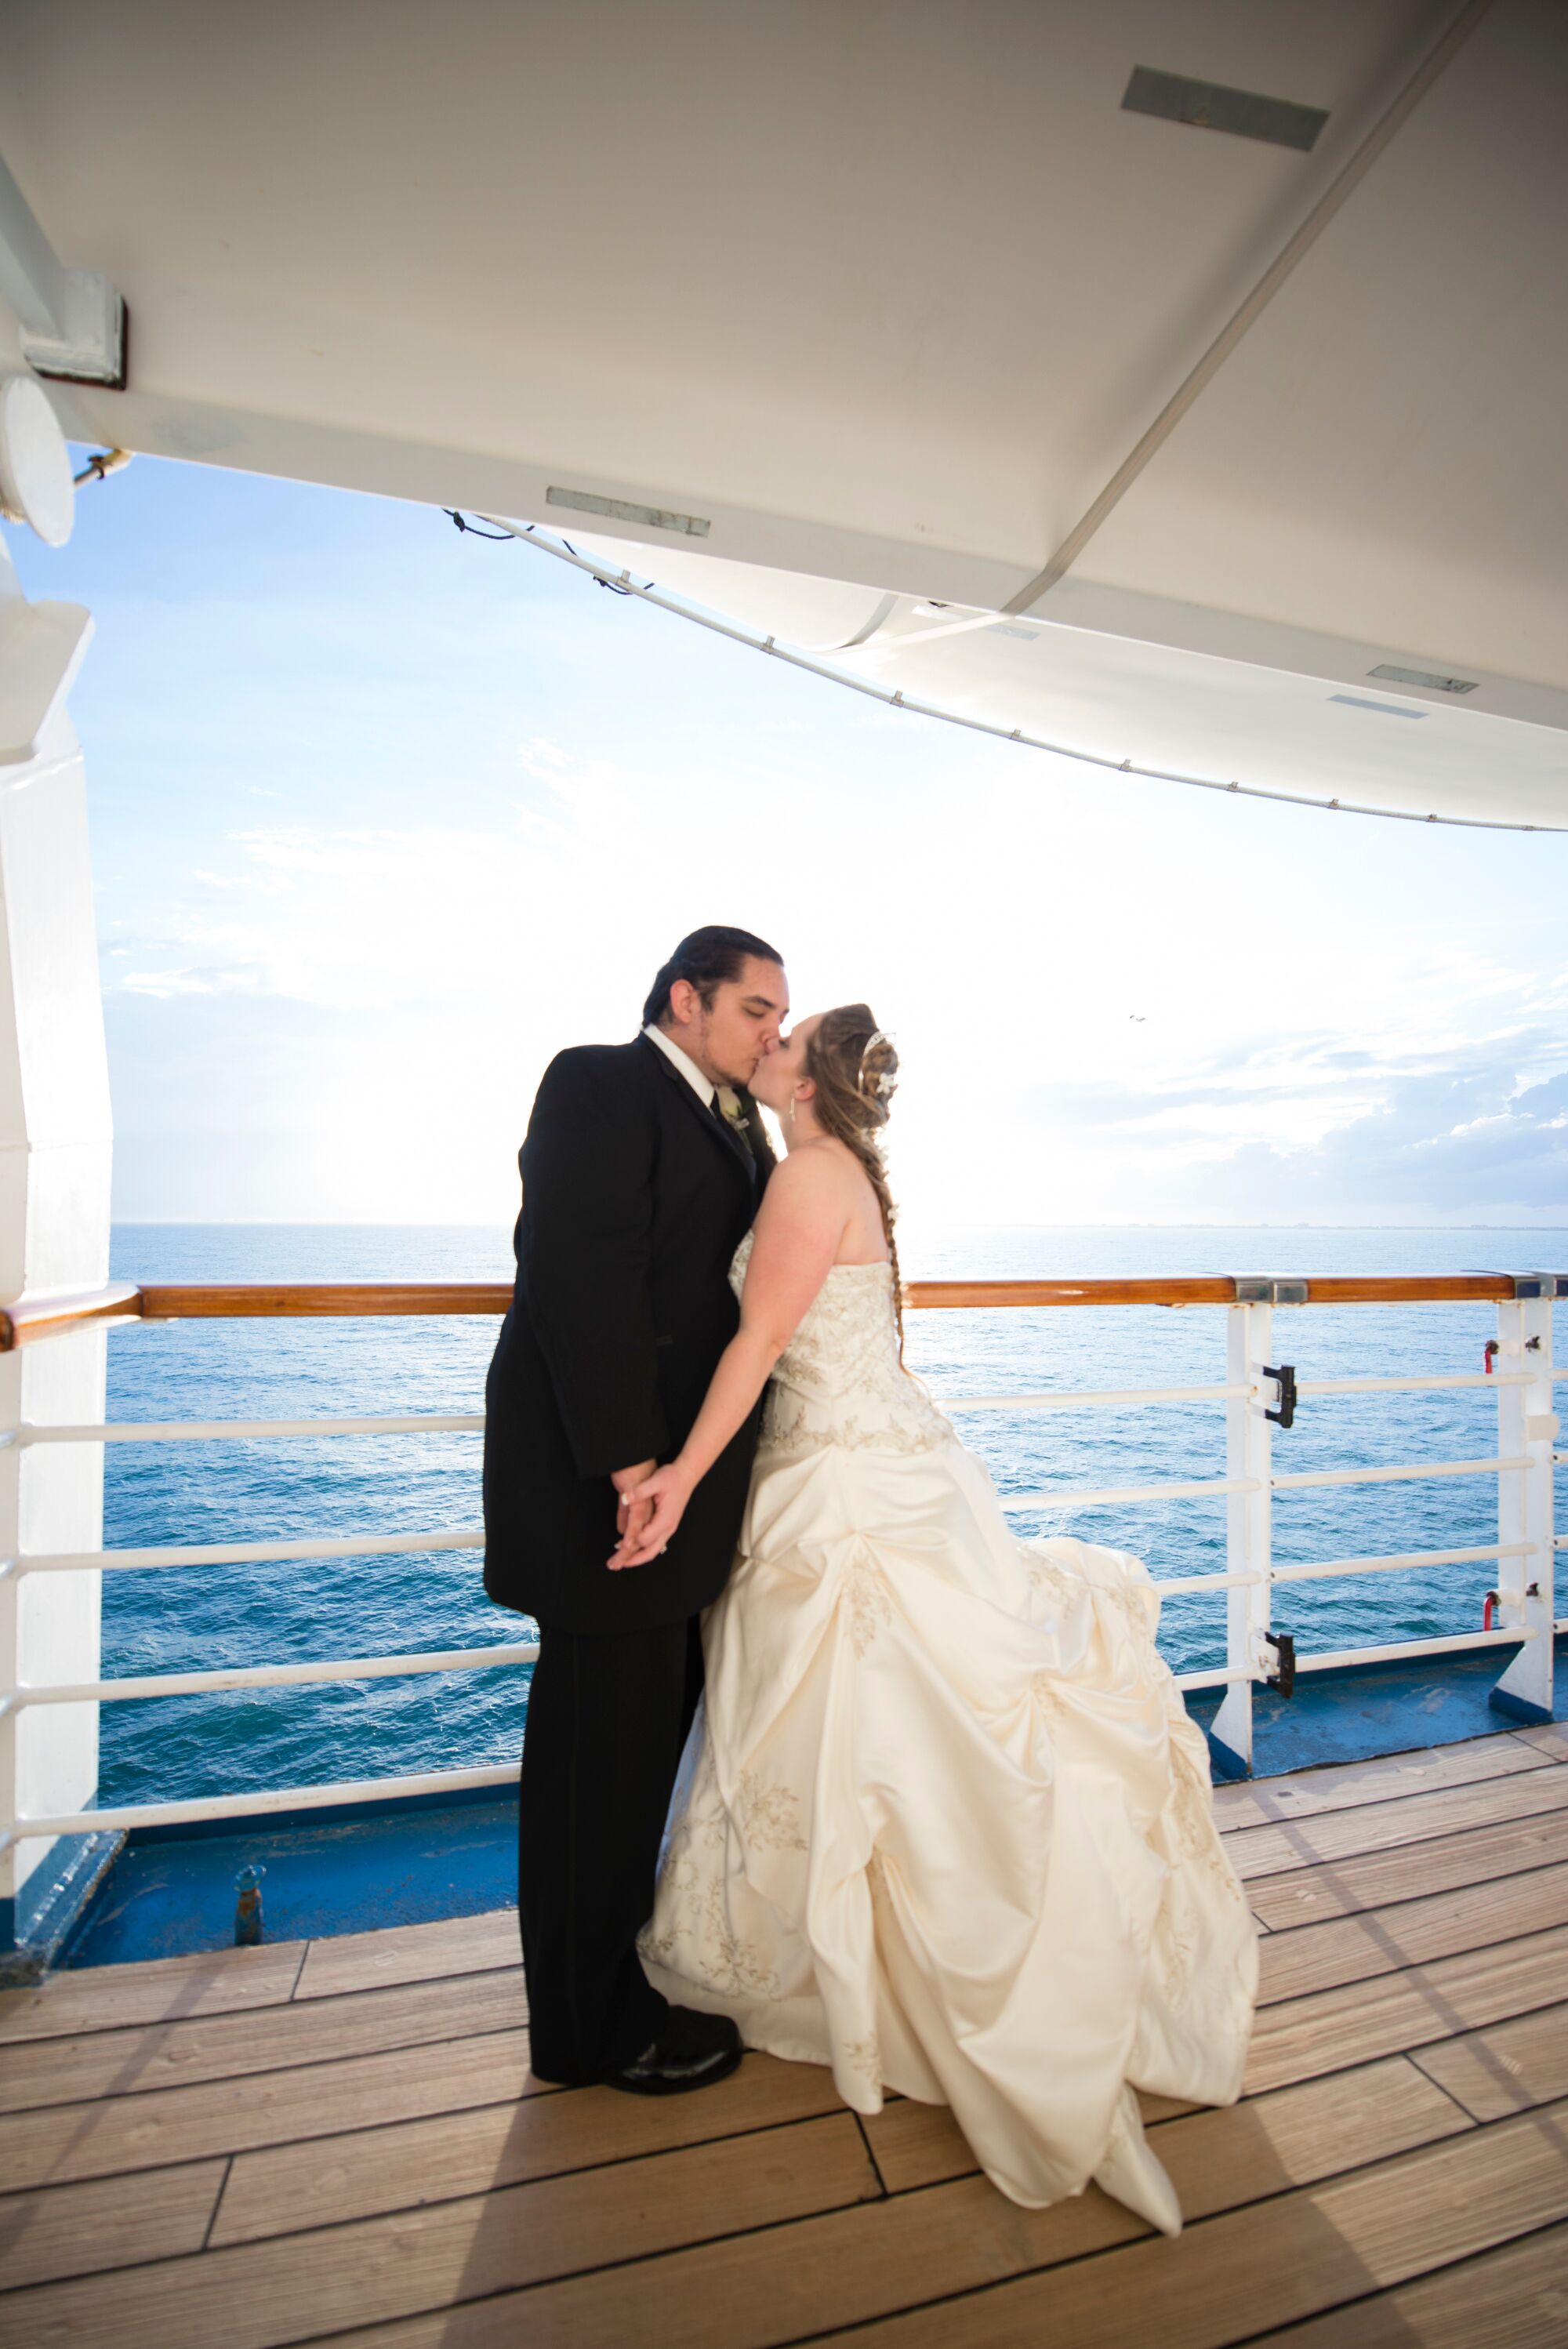 can a cruise ship captain perform weddings